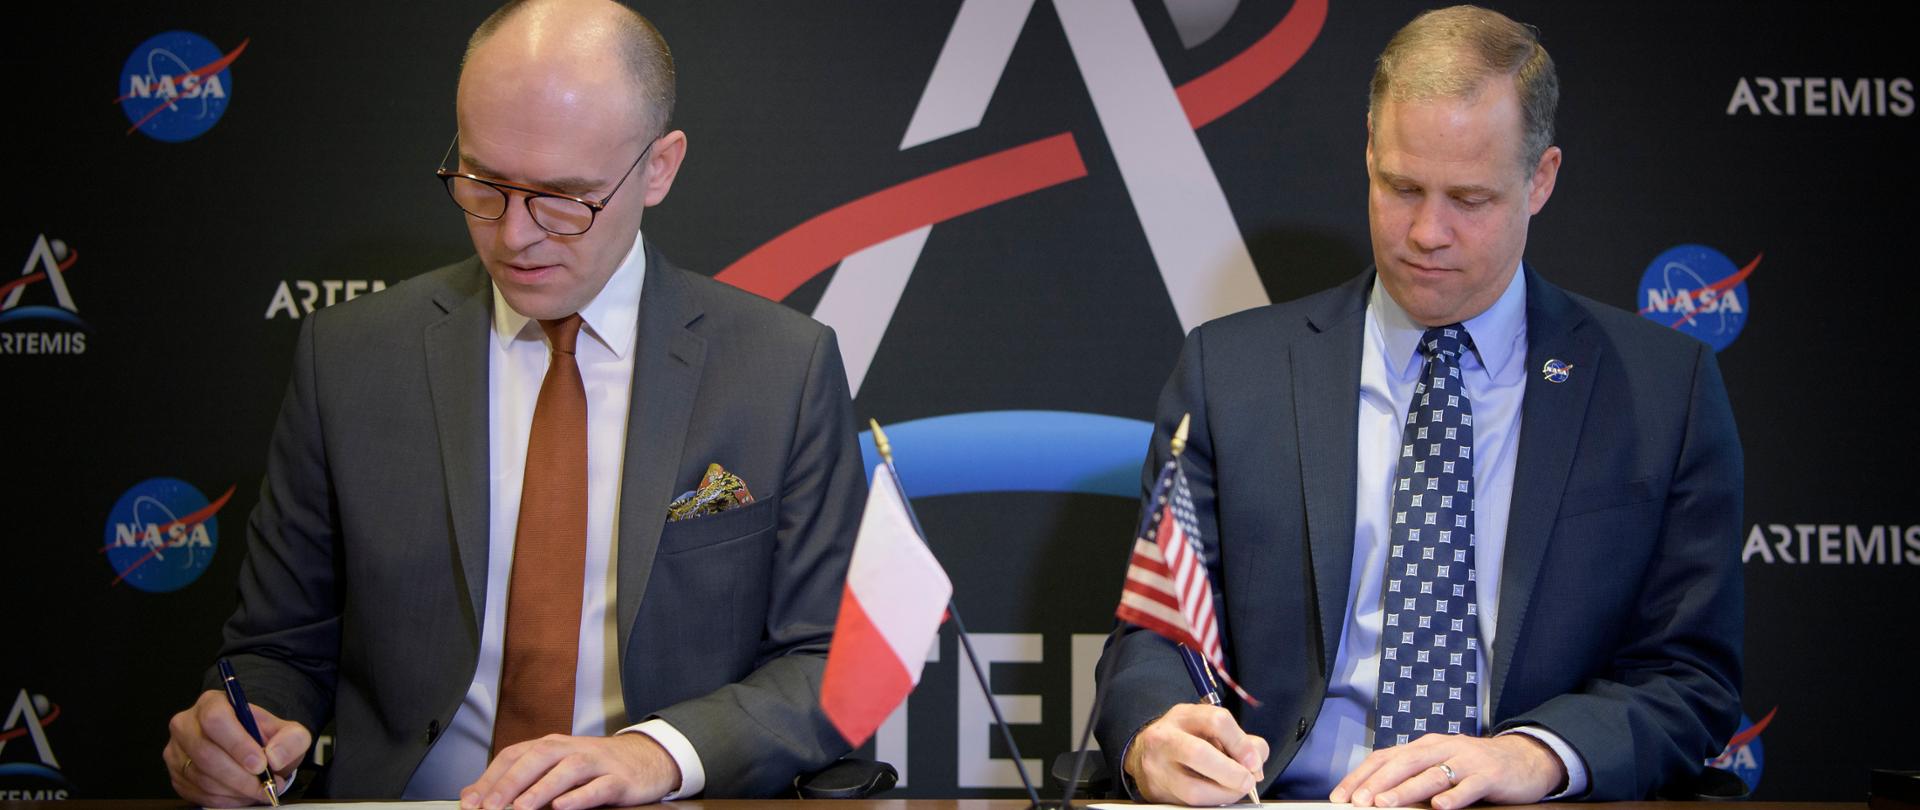 Michał Szaniawski, Prezes Polskiej Agencji Kosmicznej (POLSA) oraz James Bridenstine, Administrator NASA, podpisujący oficjalne porozumienie o współpracy między Polską a Stanami Zjednoczonymi.